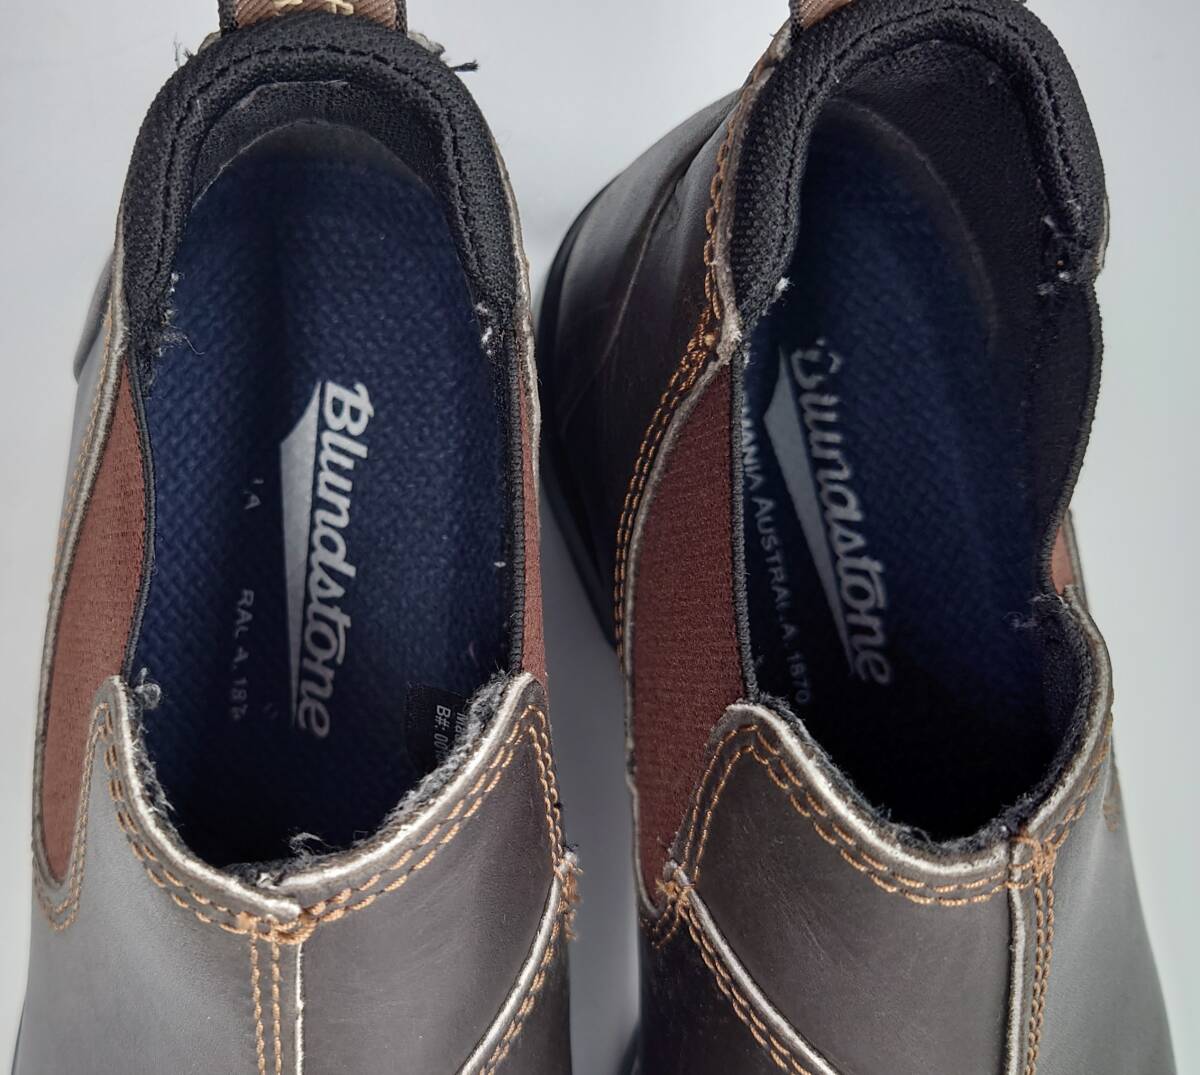 ユナイテッドアローズ取扱 Blundstone ブランドストーン ORIGINALS LOW CUT ローカット ブーツ 短靴 5 24.5cmレディース 防水レインブーツ_画像5